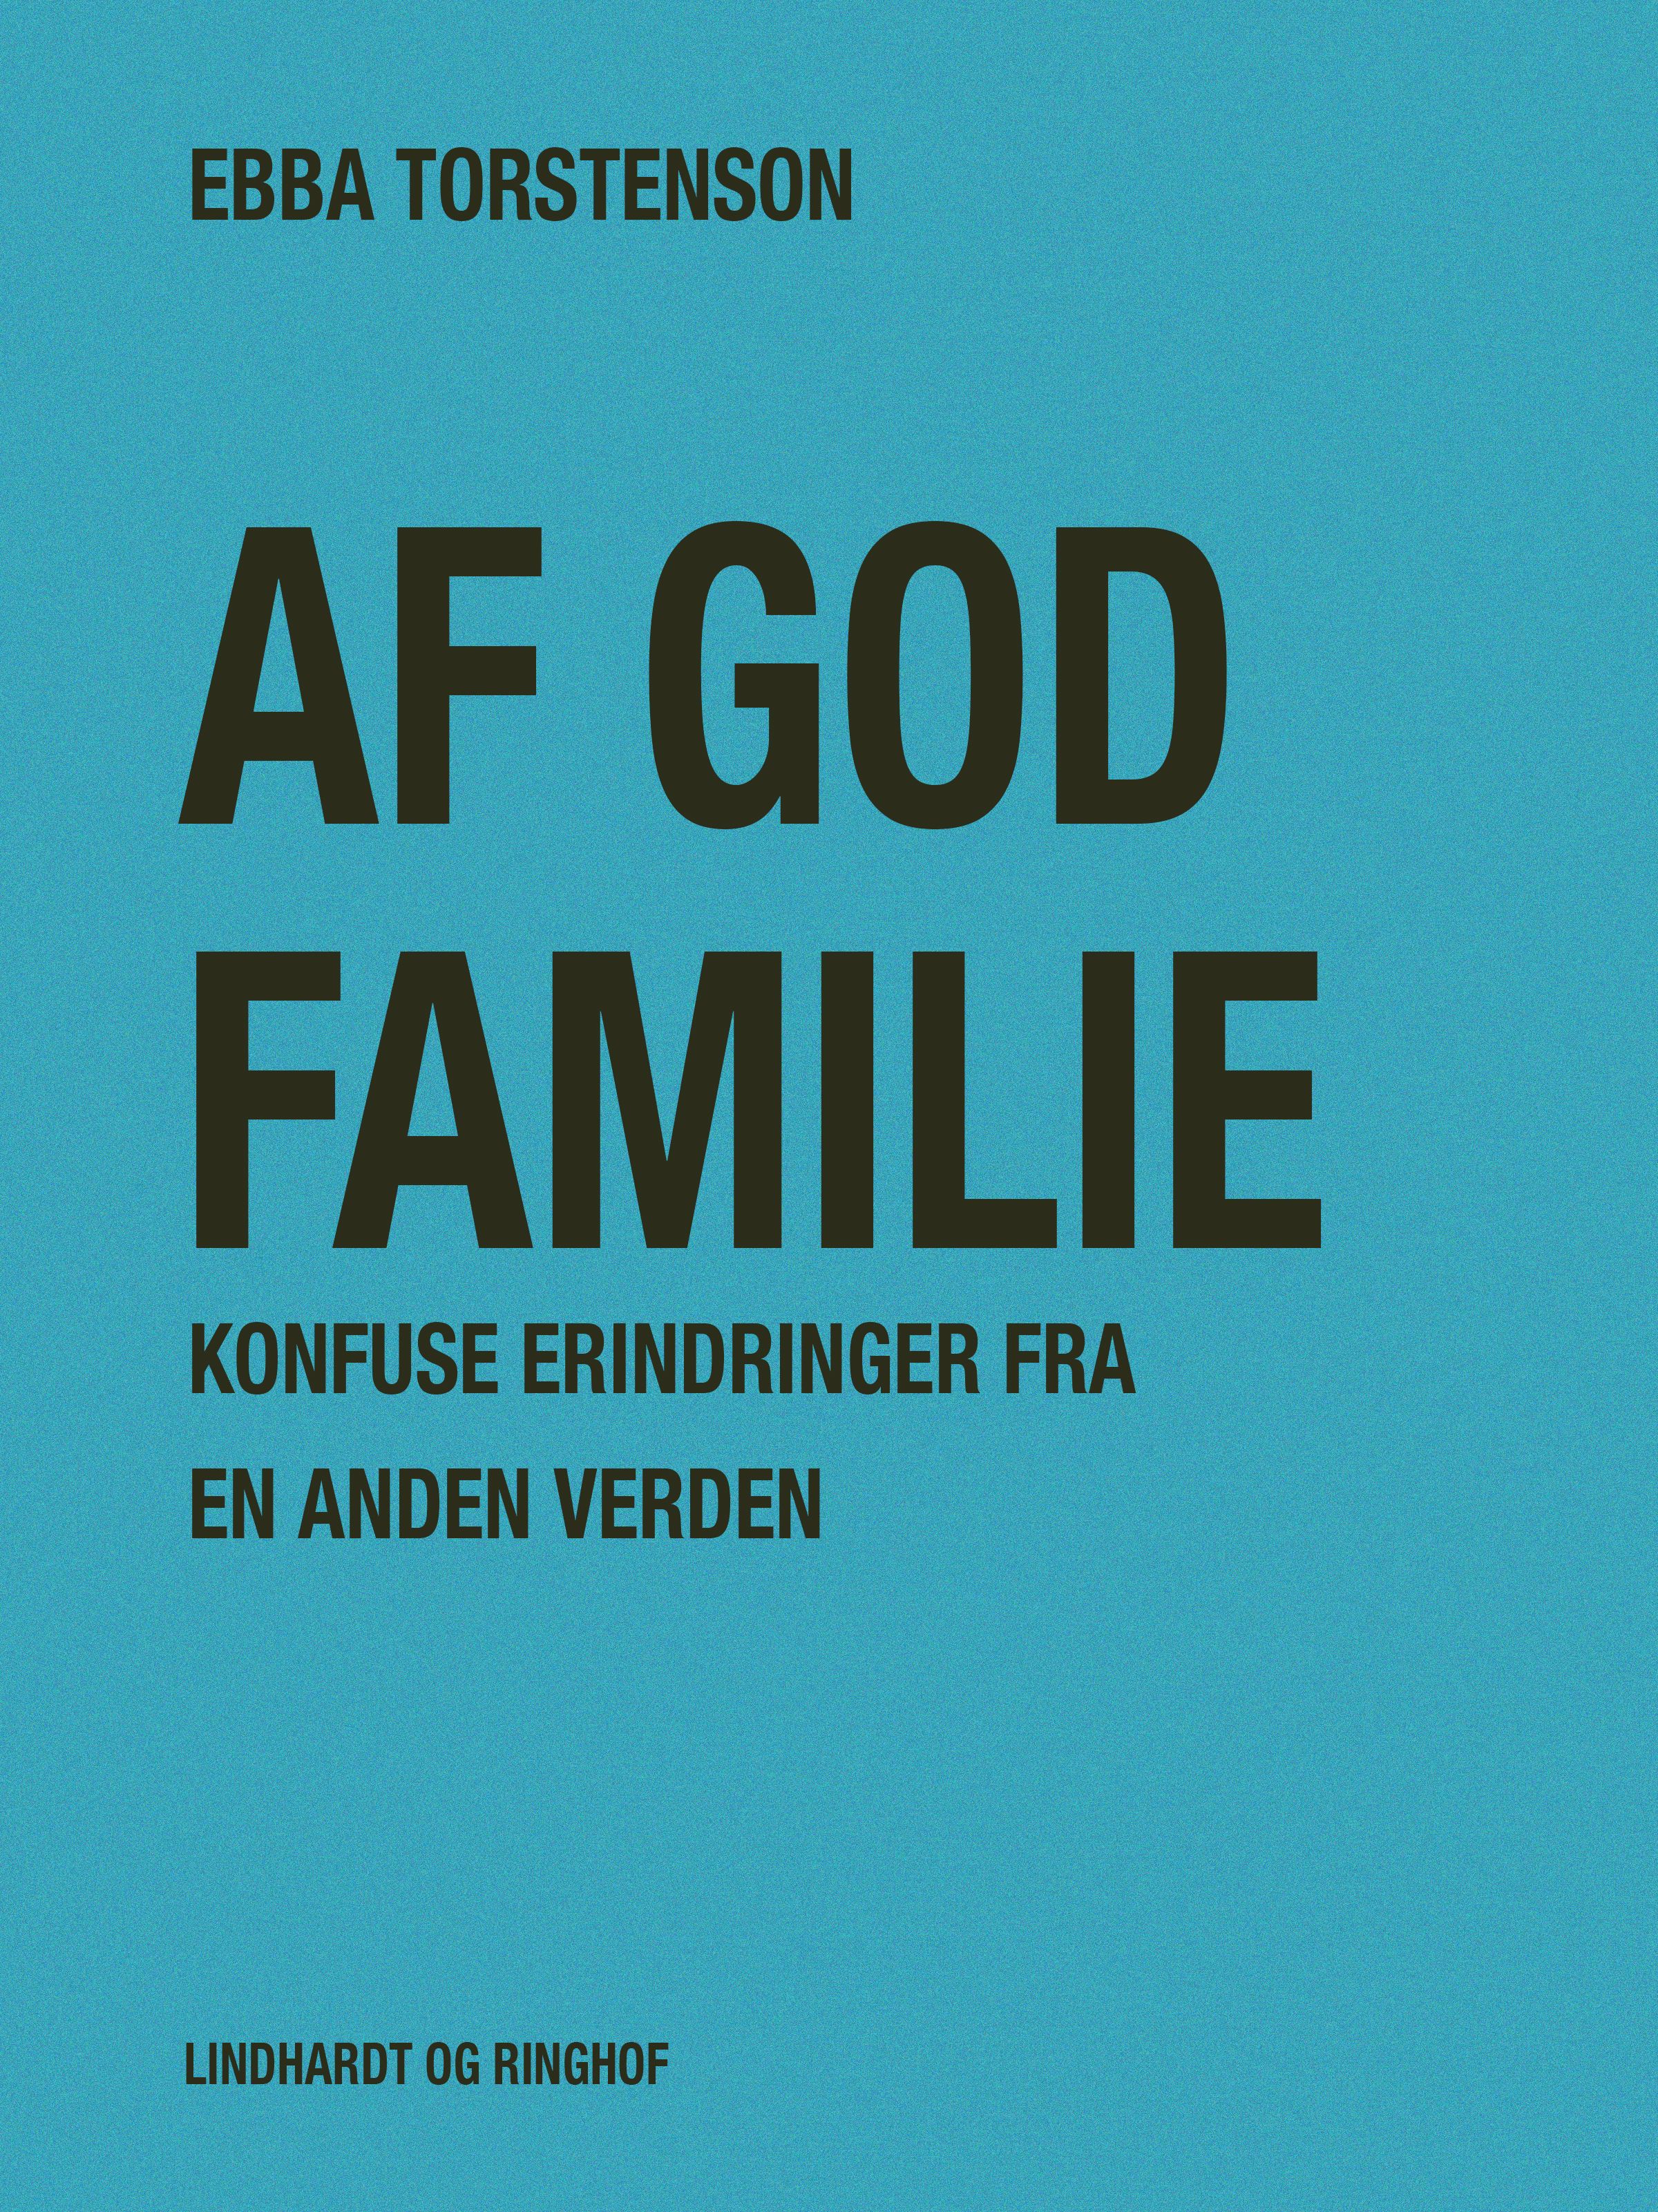 Af god familie: Konfuse erindringer fra en anden verden, e-bog af Ebba Torstenson